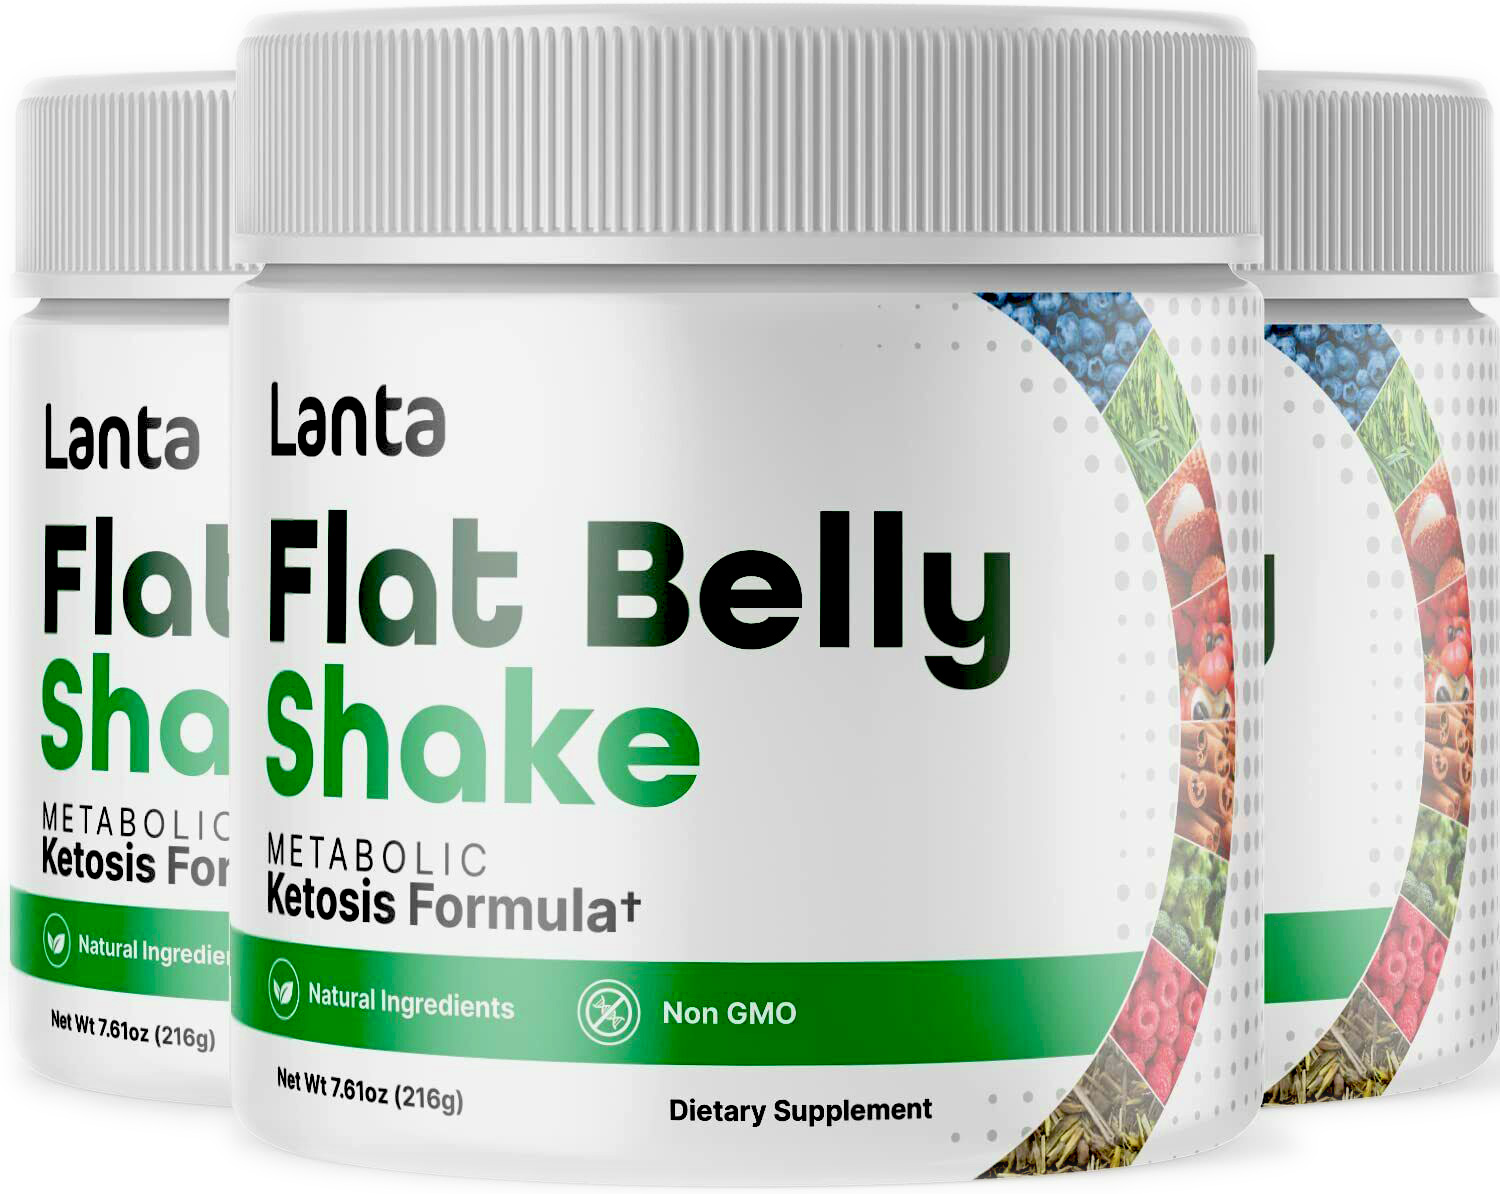 Lanta Flat Belly Shake